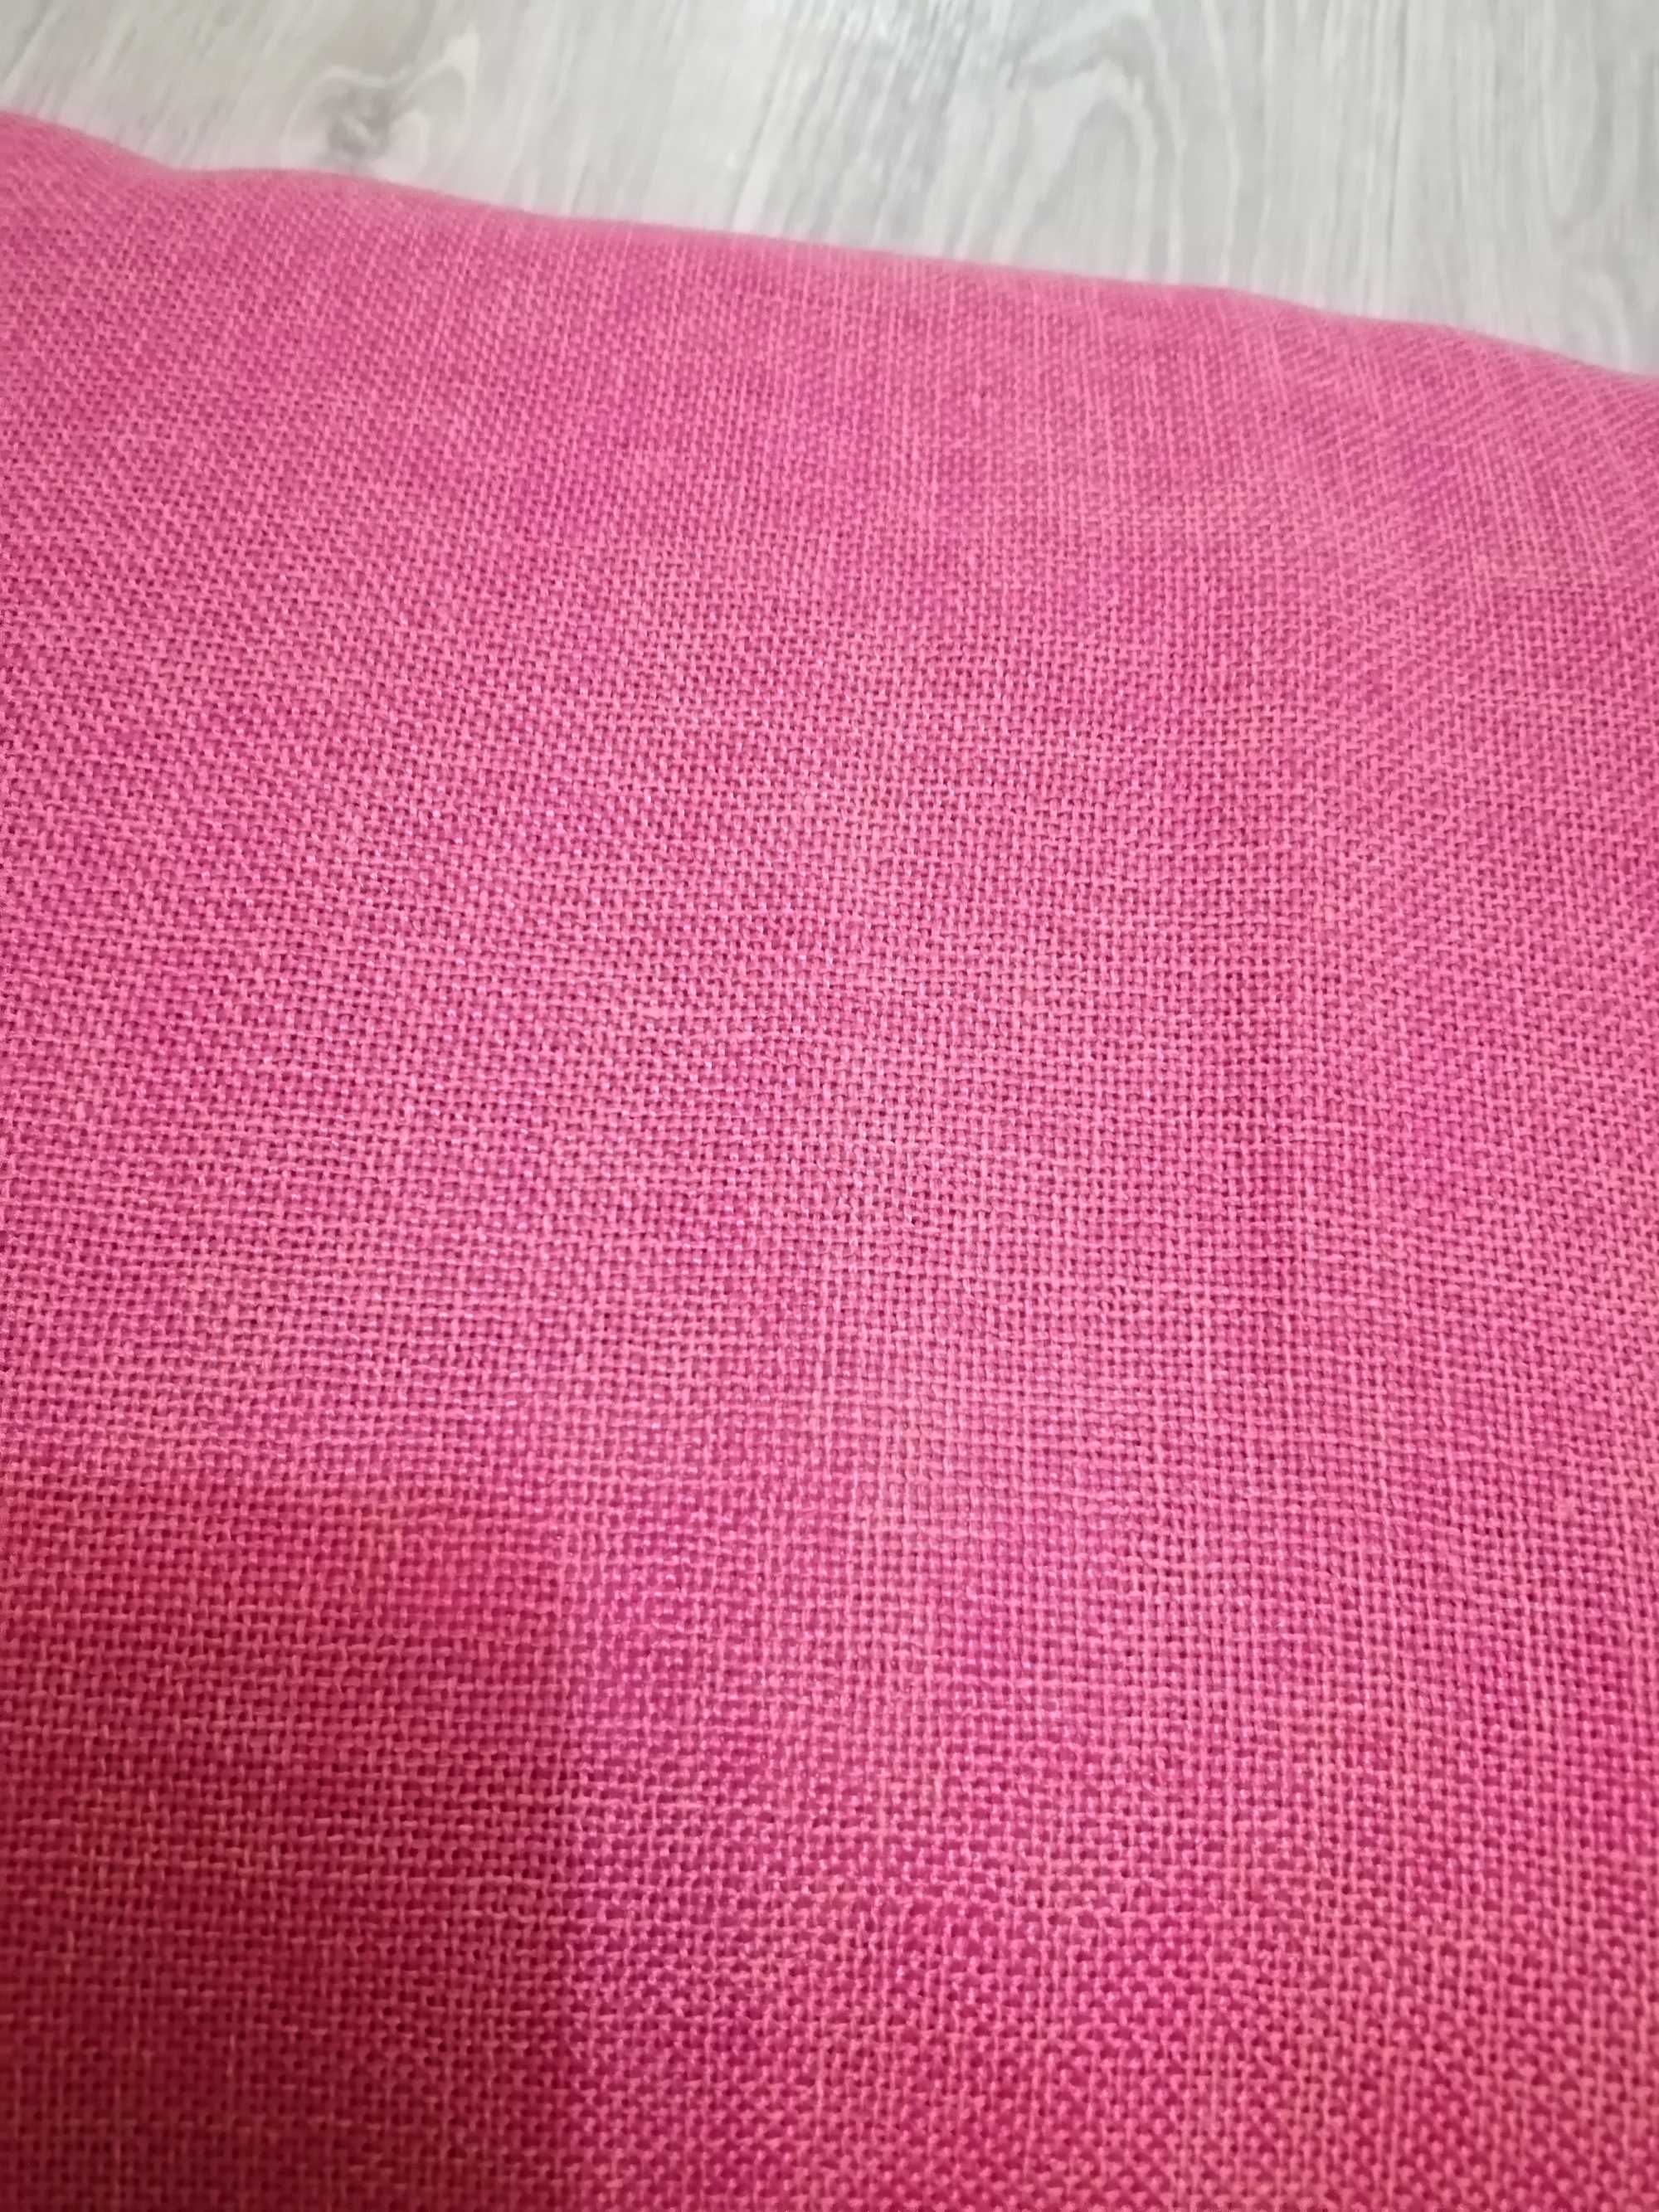 Продам НОВЫЕ отрезы на тюль и шторы в комплекте, розовым цветом